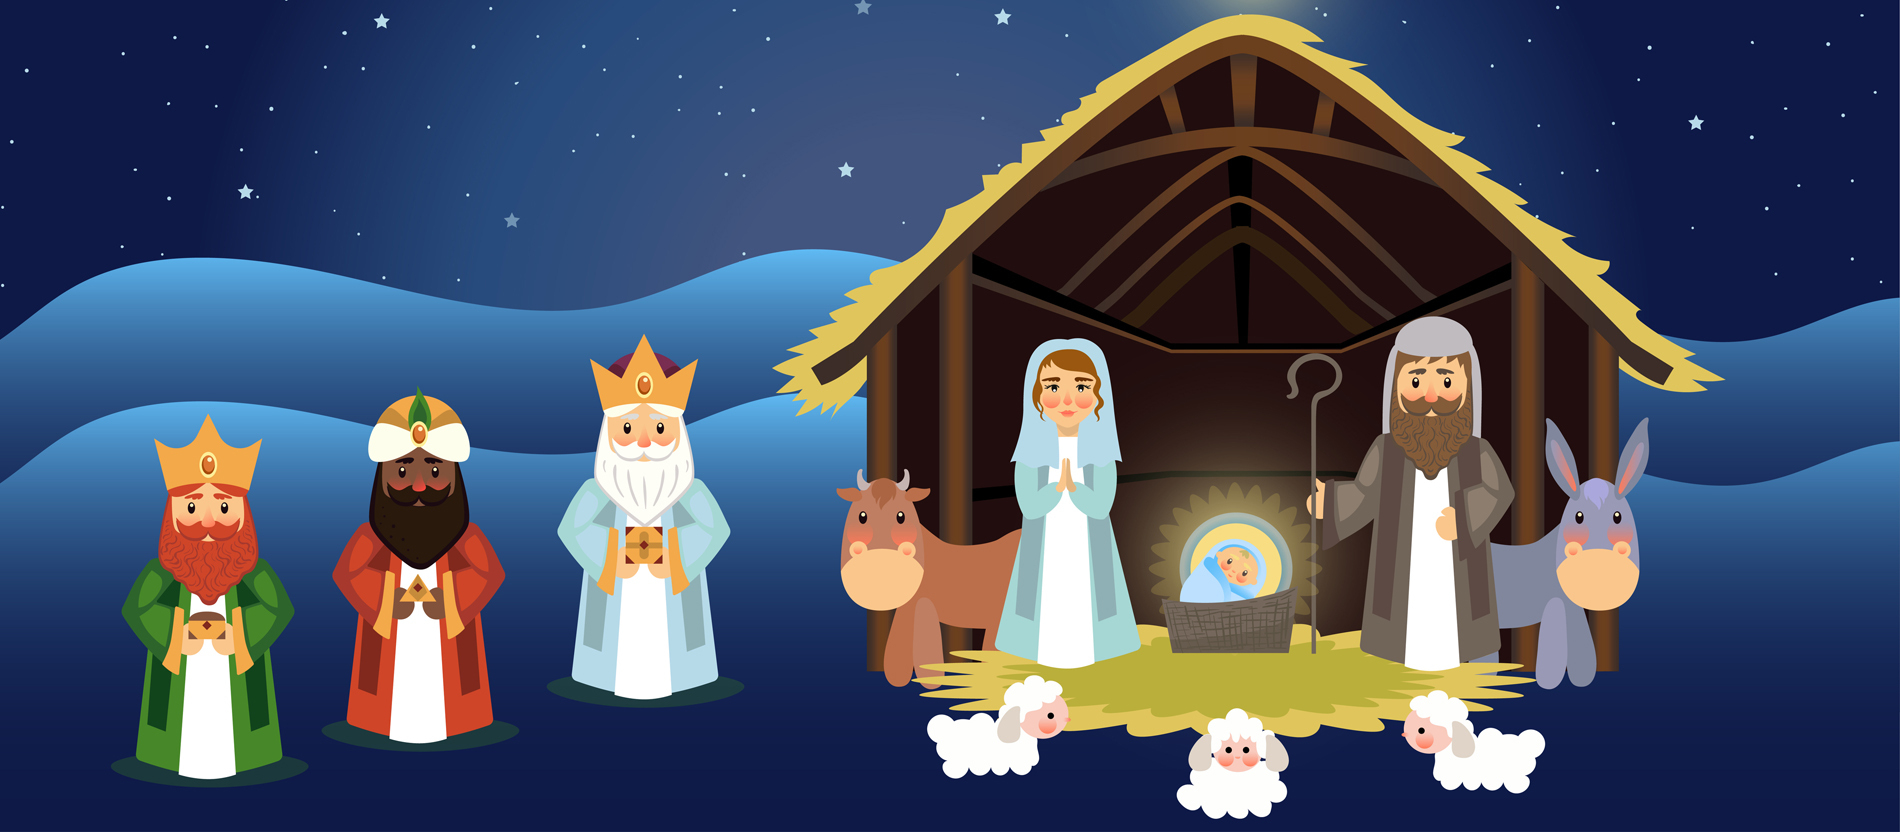 Die Weihnachtsgeschichte Für Kinder Erzählt - Katholisch.de in Quatsch Bilder Für Kinder